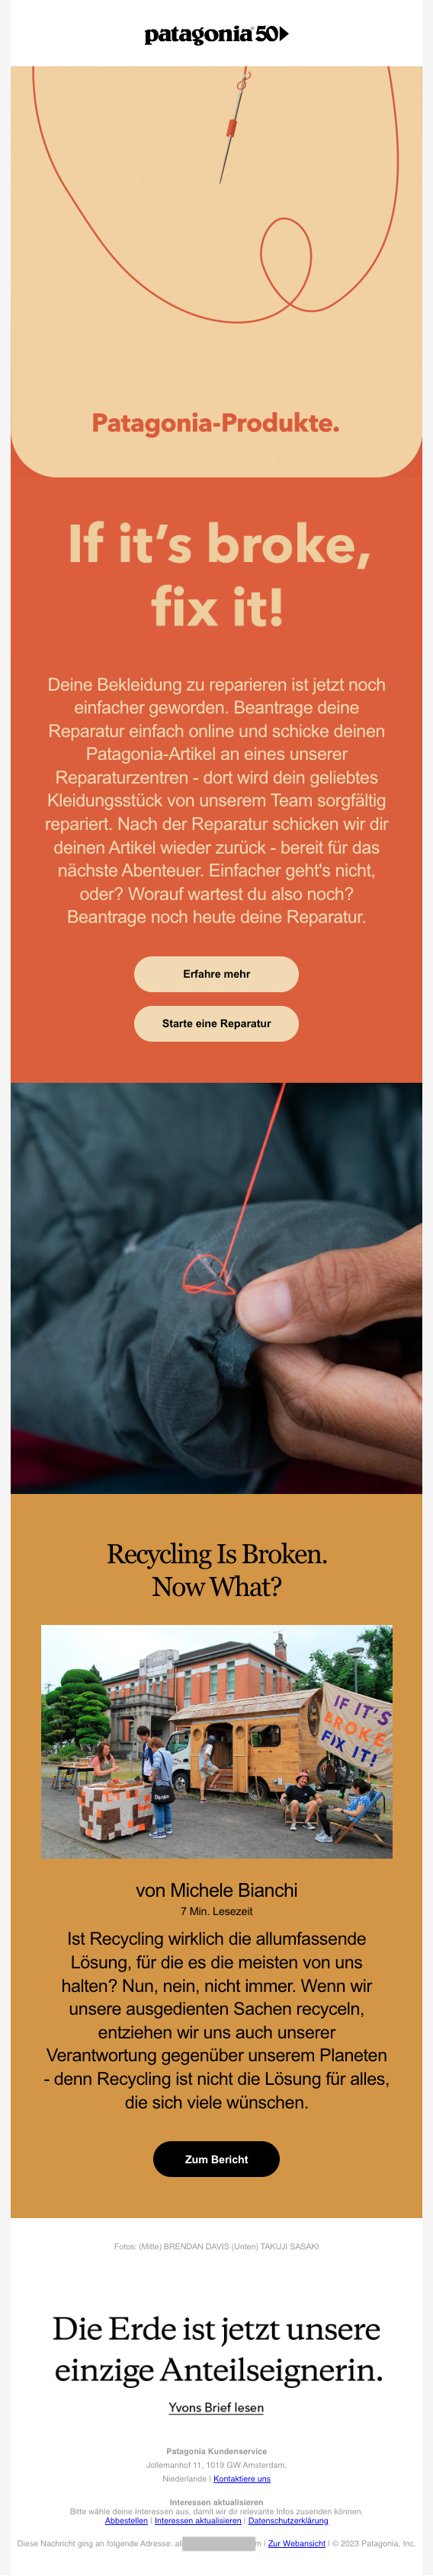 Eine E-Mail von Patagonia mit Infos über die Reparaturmöglichkeiten von Kleidungsstücken